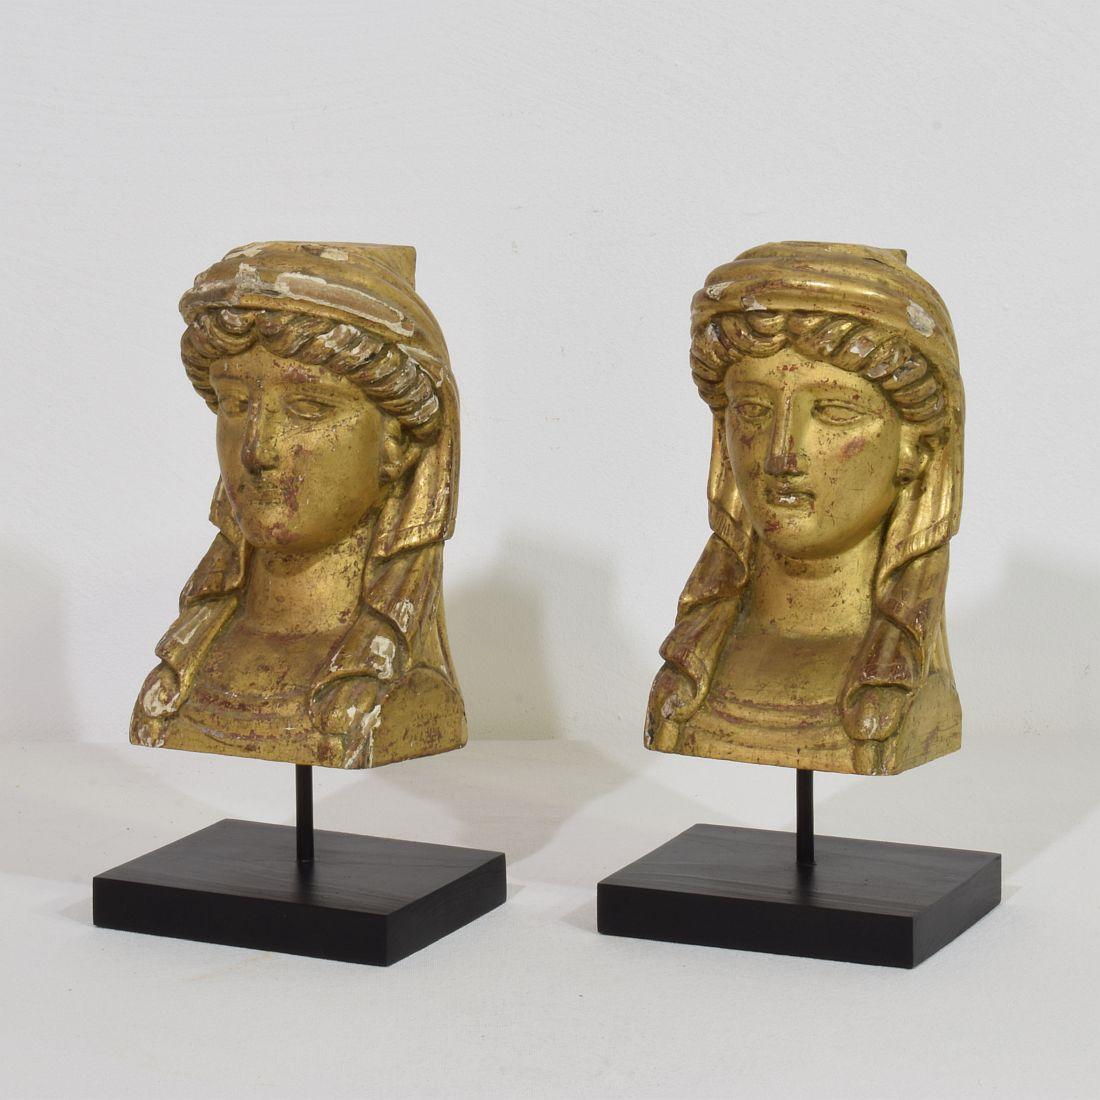 Magnifique paire d'ornements de tête en bois doré sculptés à la main. 
France vers 1805-1820
Les mesures sont individuelles et incluent la base en bois.